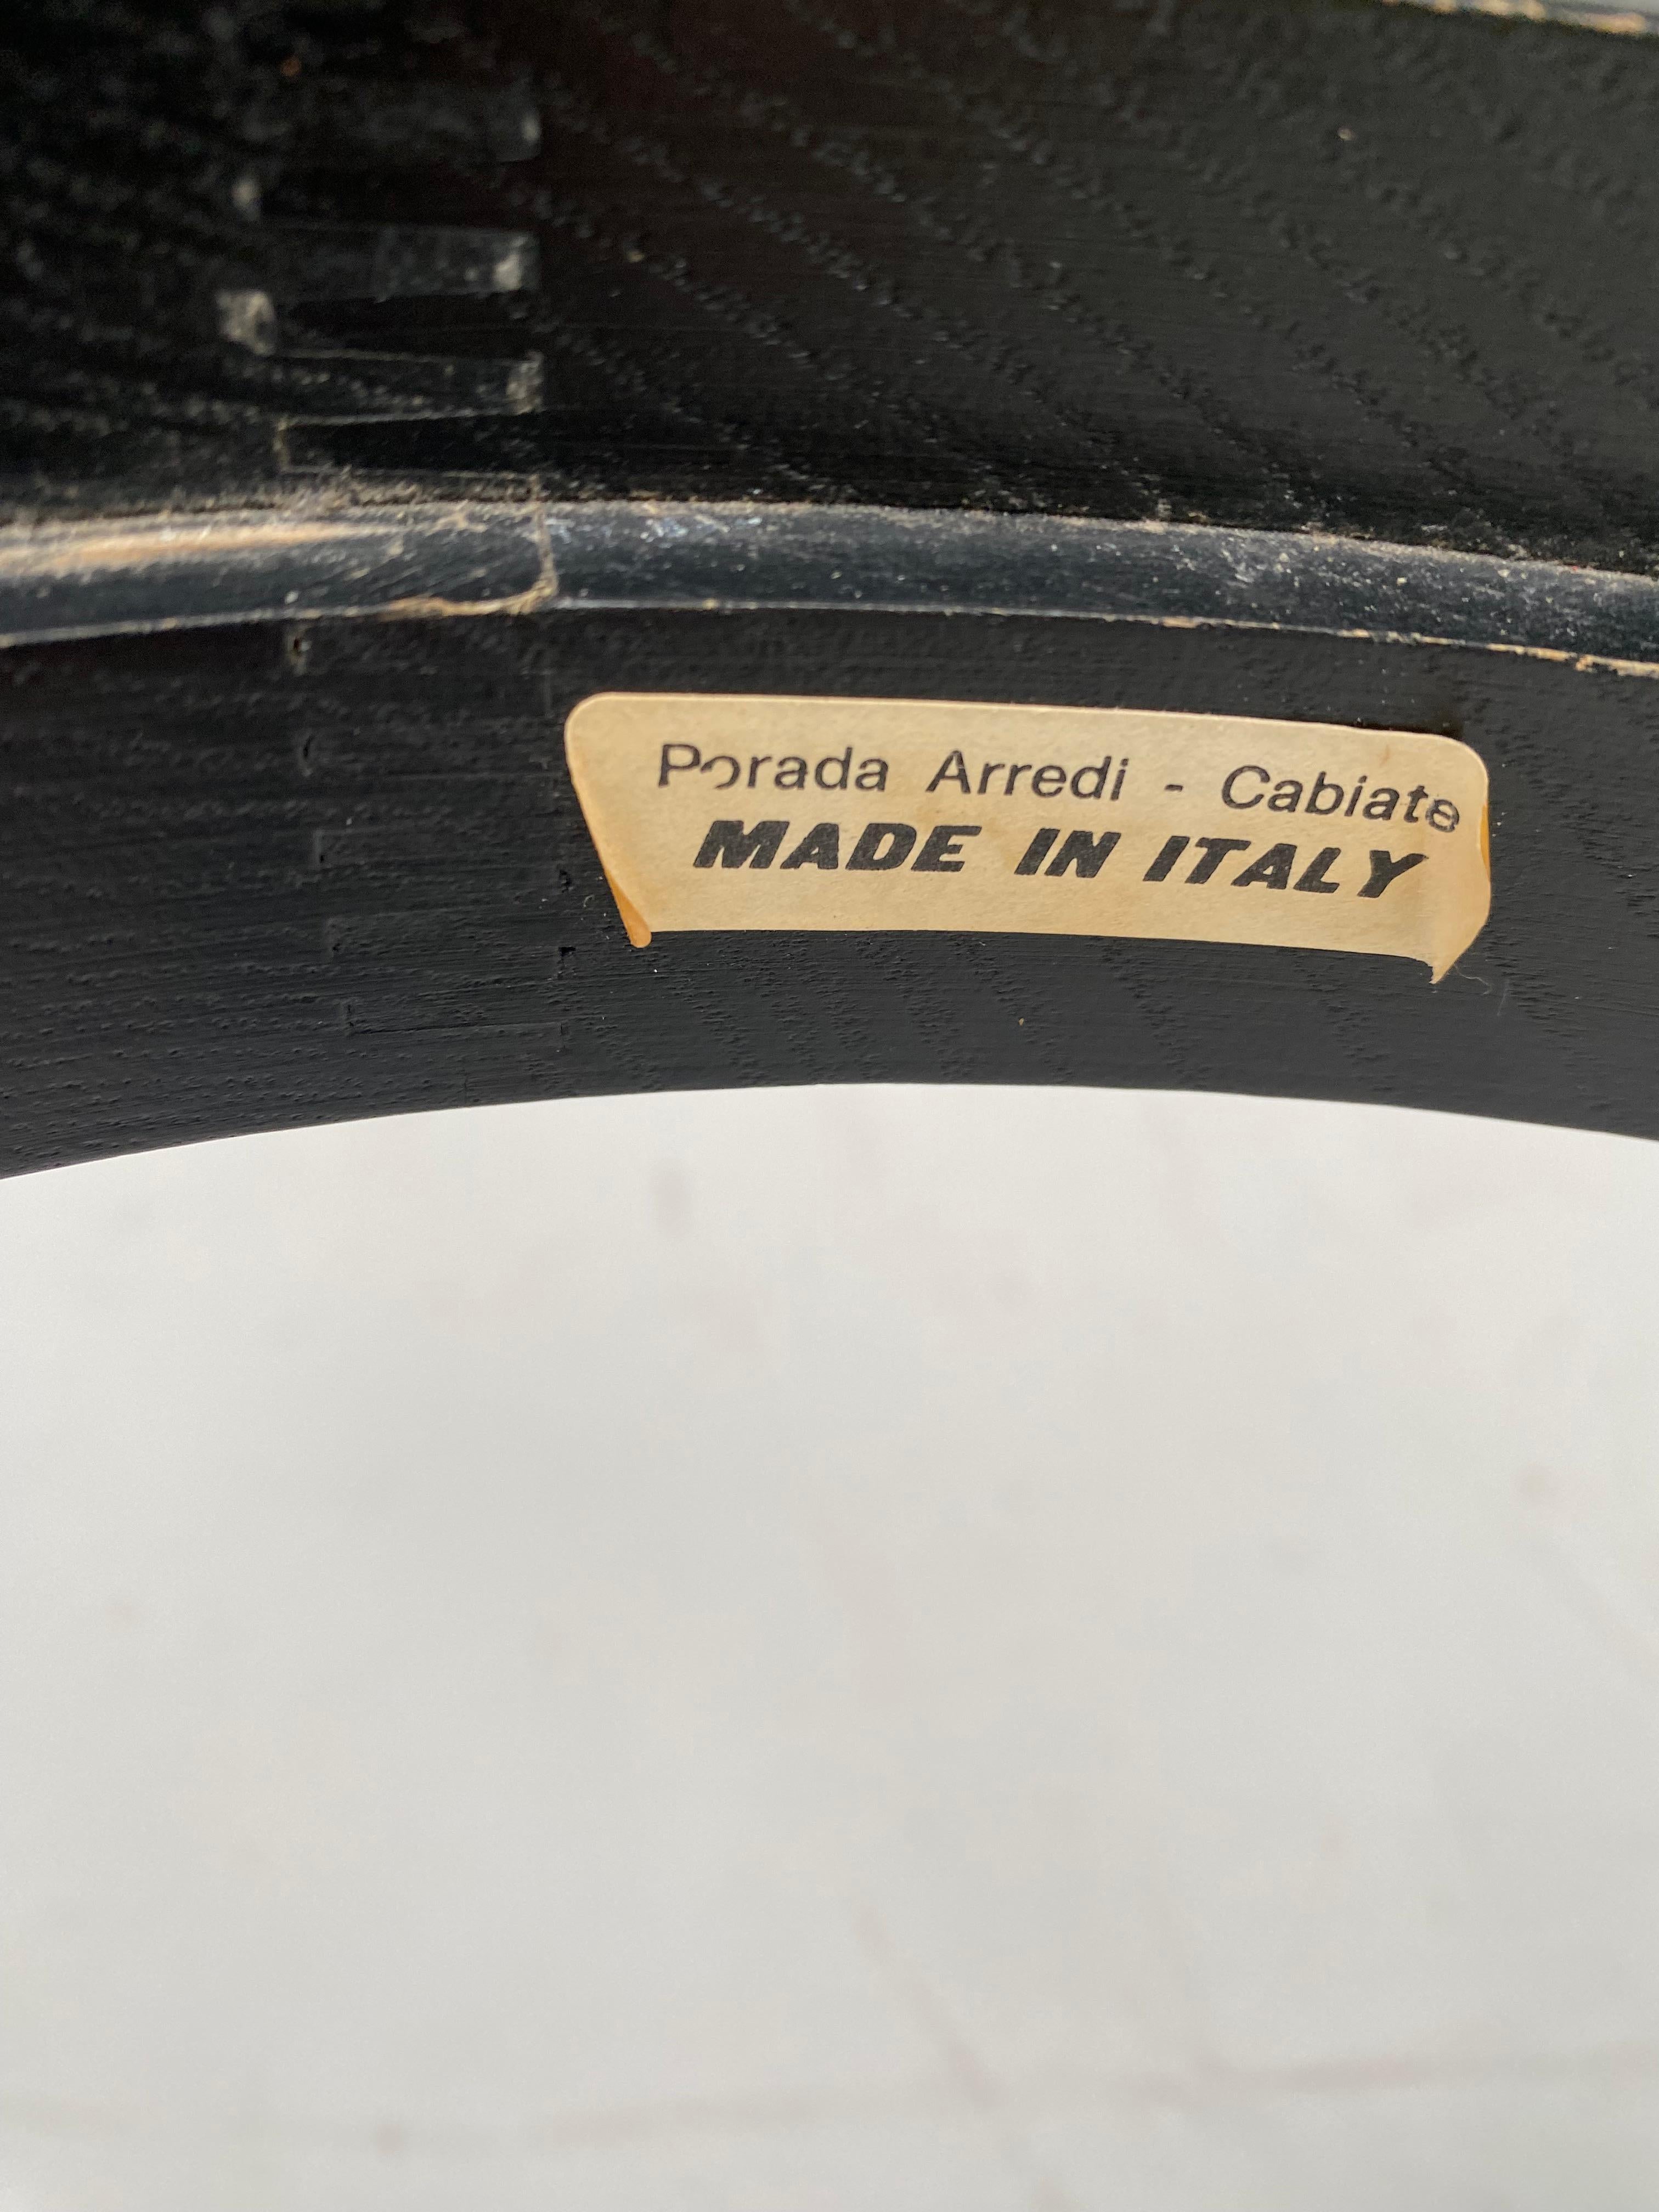 Ensemble très fonctionnel de tables d'appoint empilables au design italien des années 1970, fabriqué par Porada Arredi. 

Plateau en frêne massif teinté noir et verre fumé

Fabrication italienne de qualité supérieure avec leurs labels d'origine. 